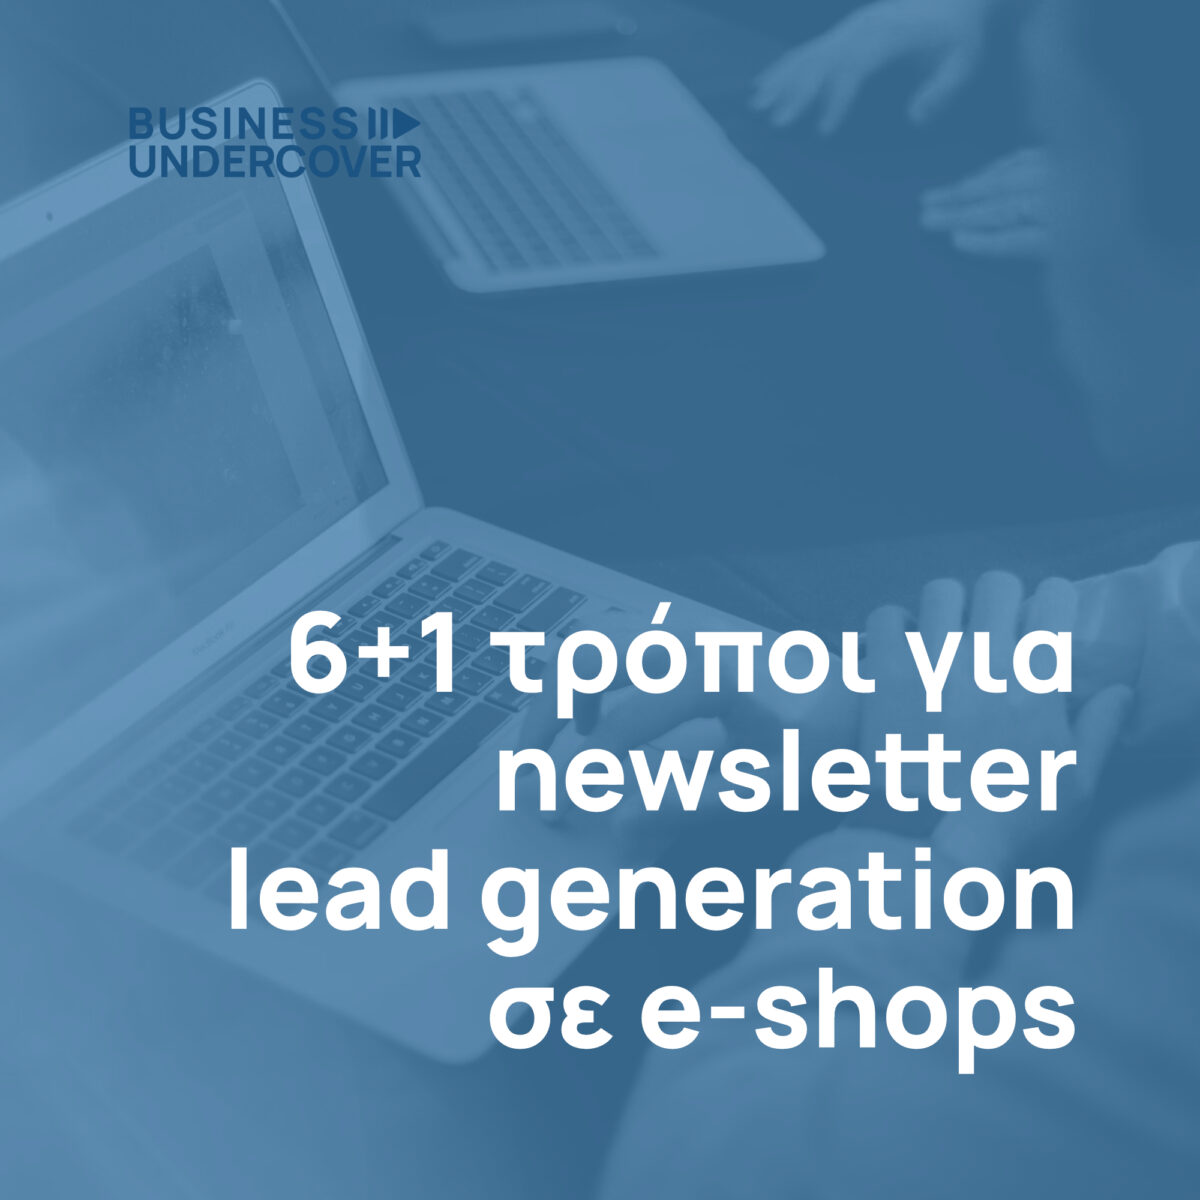 6+1 Ιδέες για newsletter lead generation σε e-shops